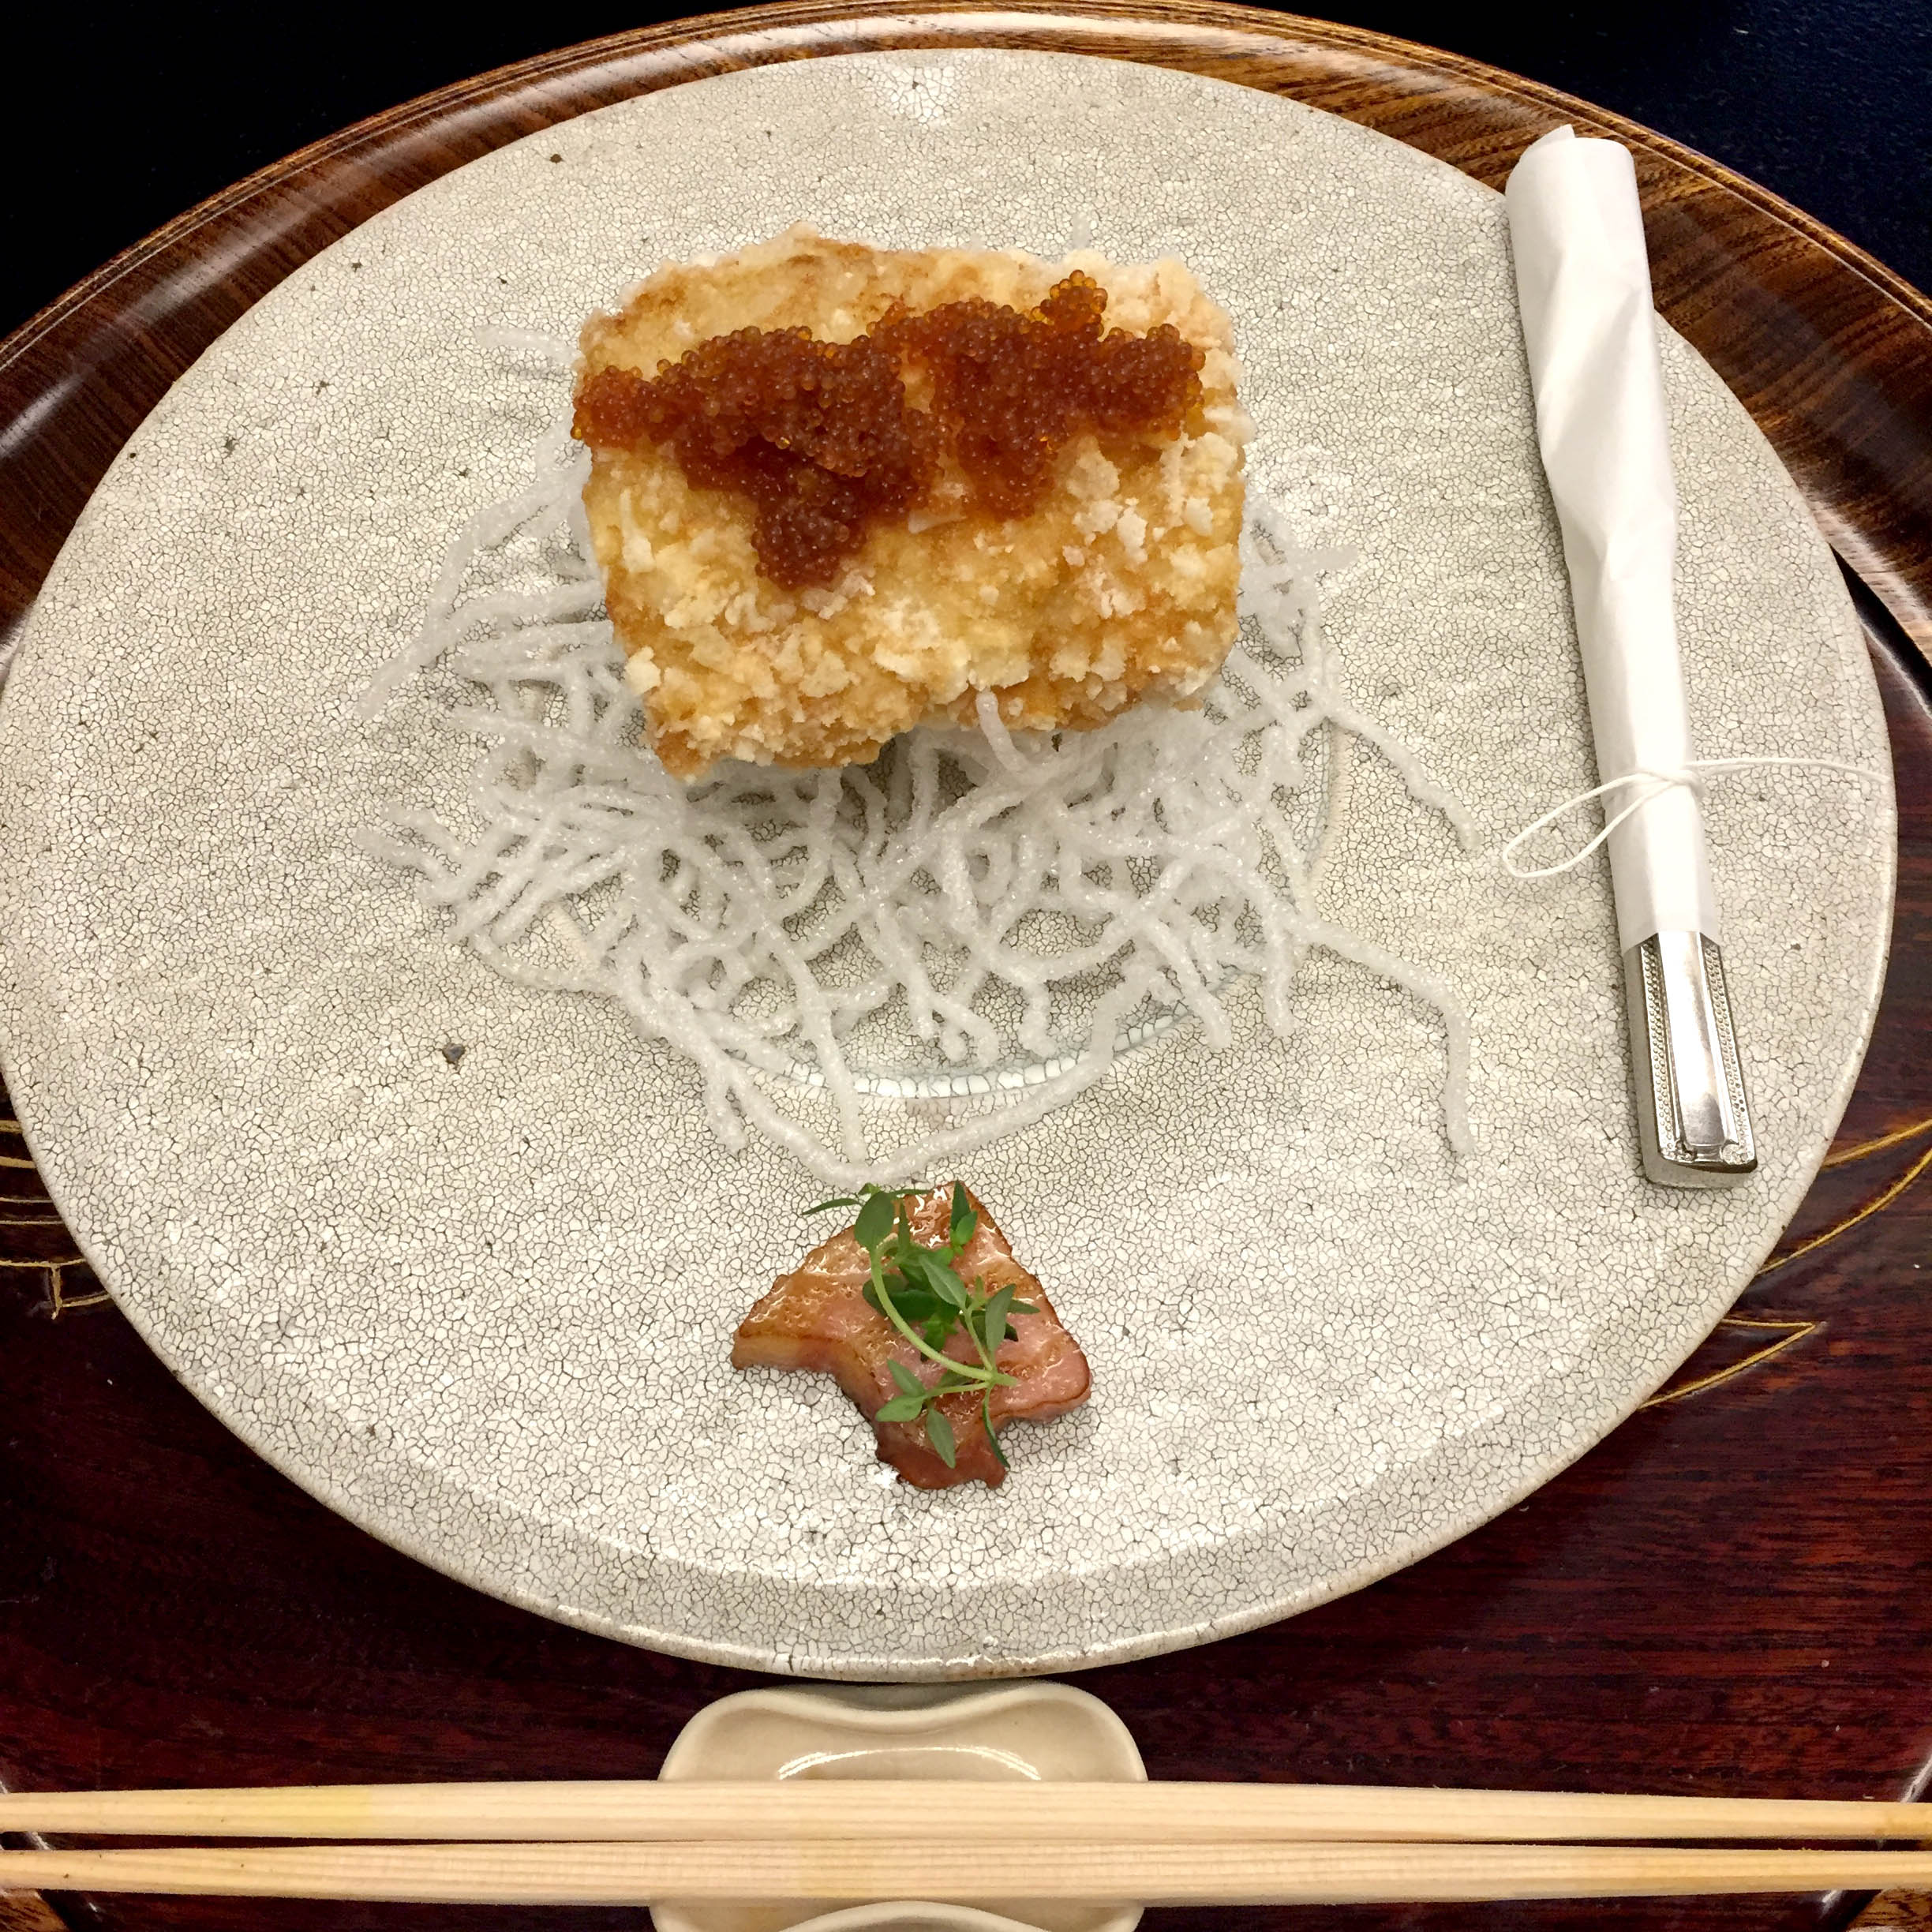 绝对有用的日本米其林餐厅指南 - 微信公众平台